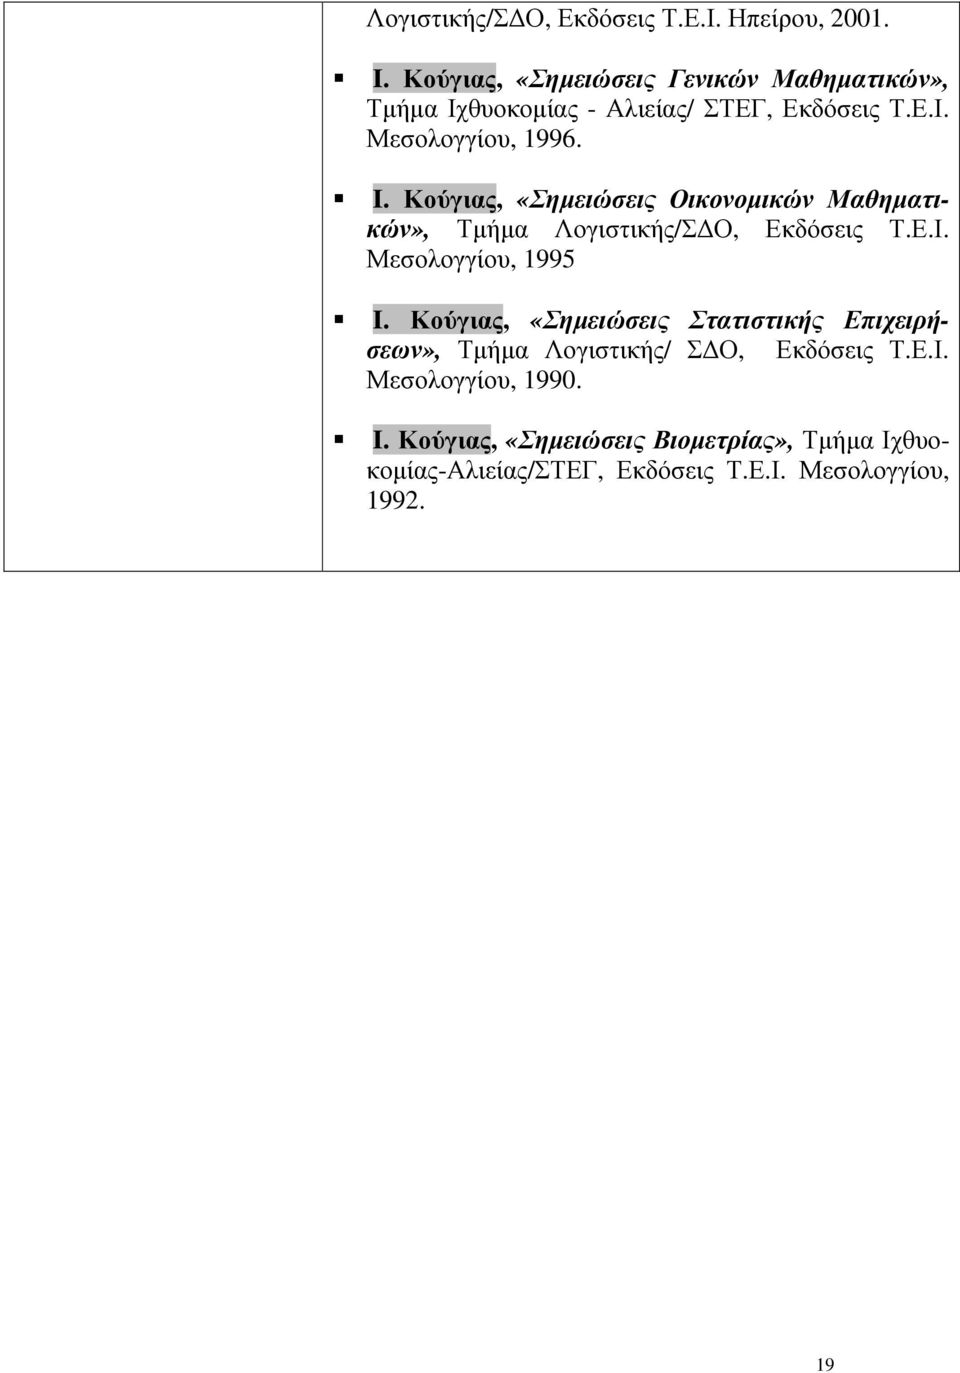 Κούγιας, «Σηµειώσεις Οικονοµικών Μαθηµατικών», Τµήµα Λογιστικής/Σ Ο, Εκδόσεις Τ.Ε.Ι. Μεσολογγίου, 1995 I.